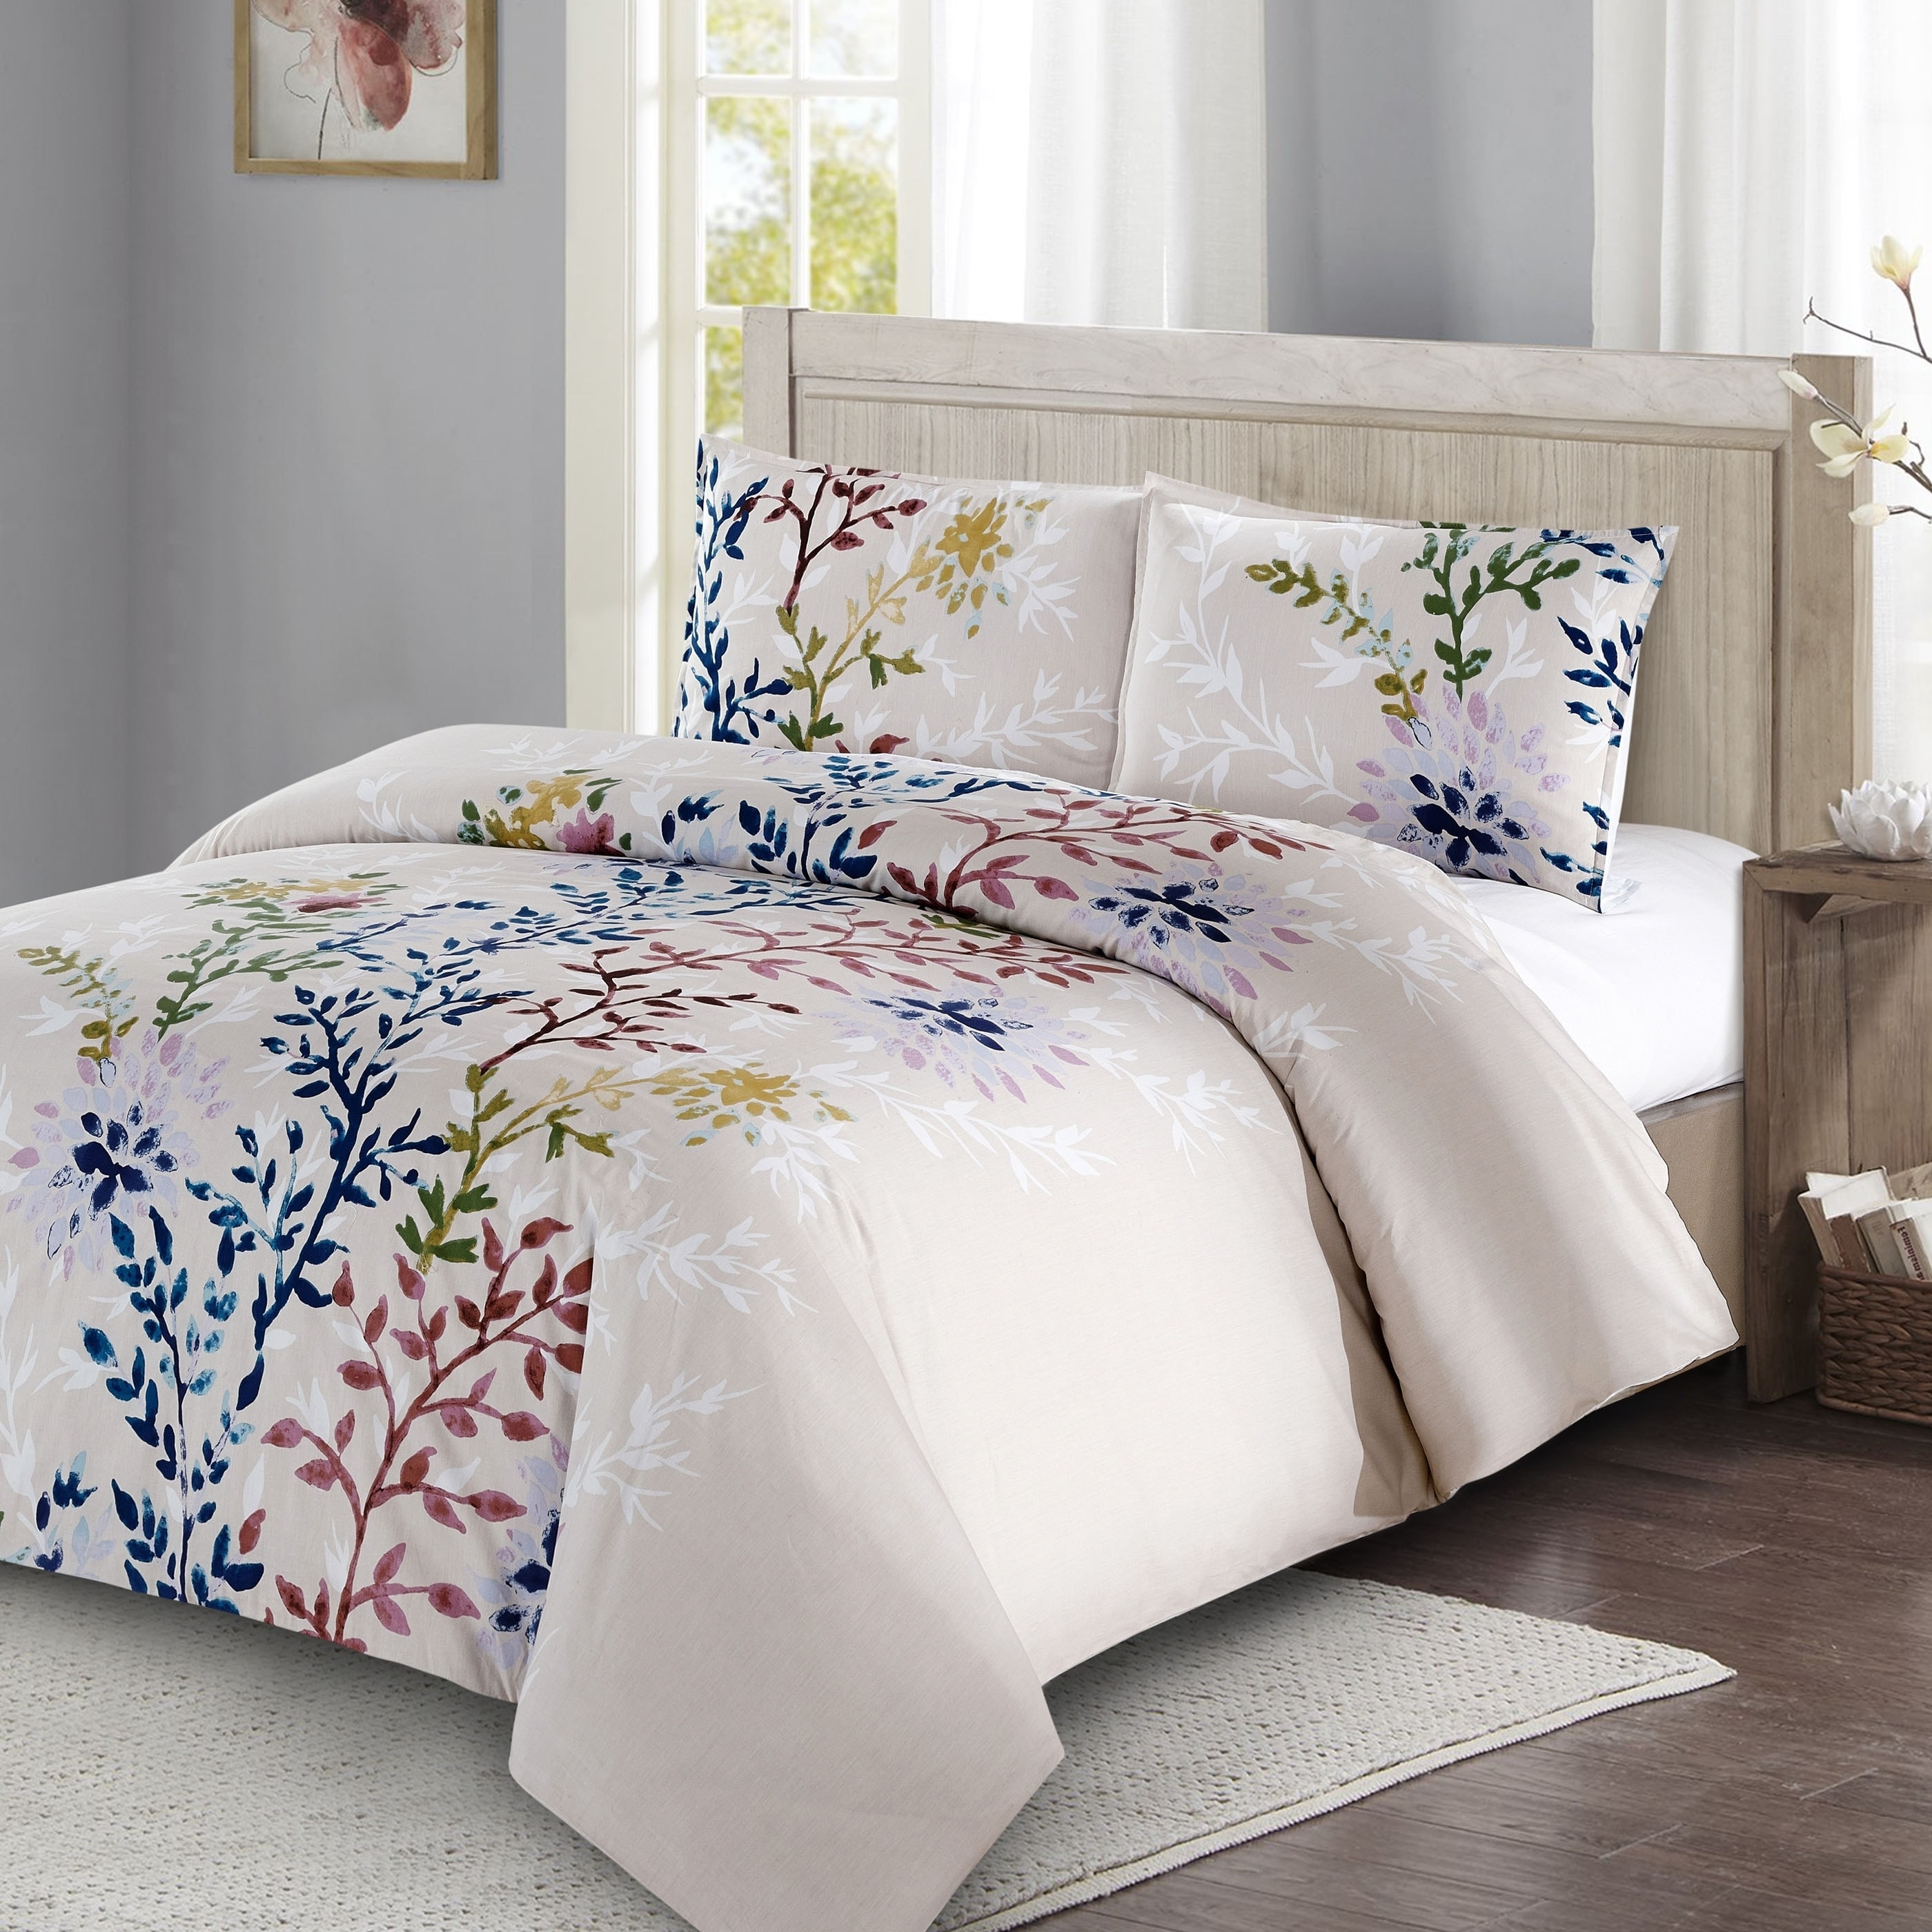 Reversible Quilt Wrinkle Free Printed Bedspread Luxury Dahlia Coverlet set 